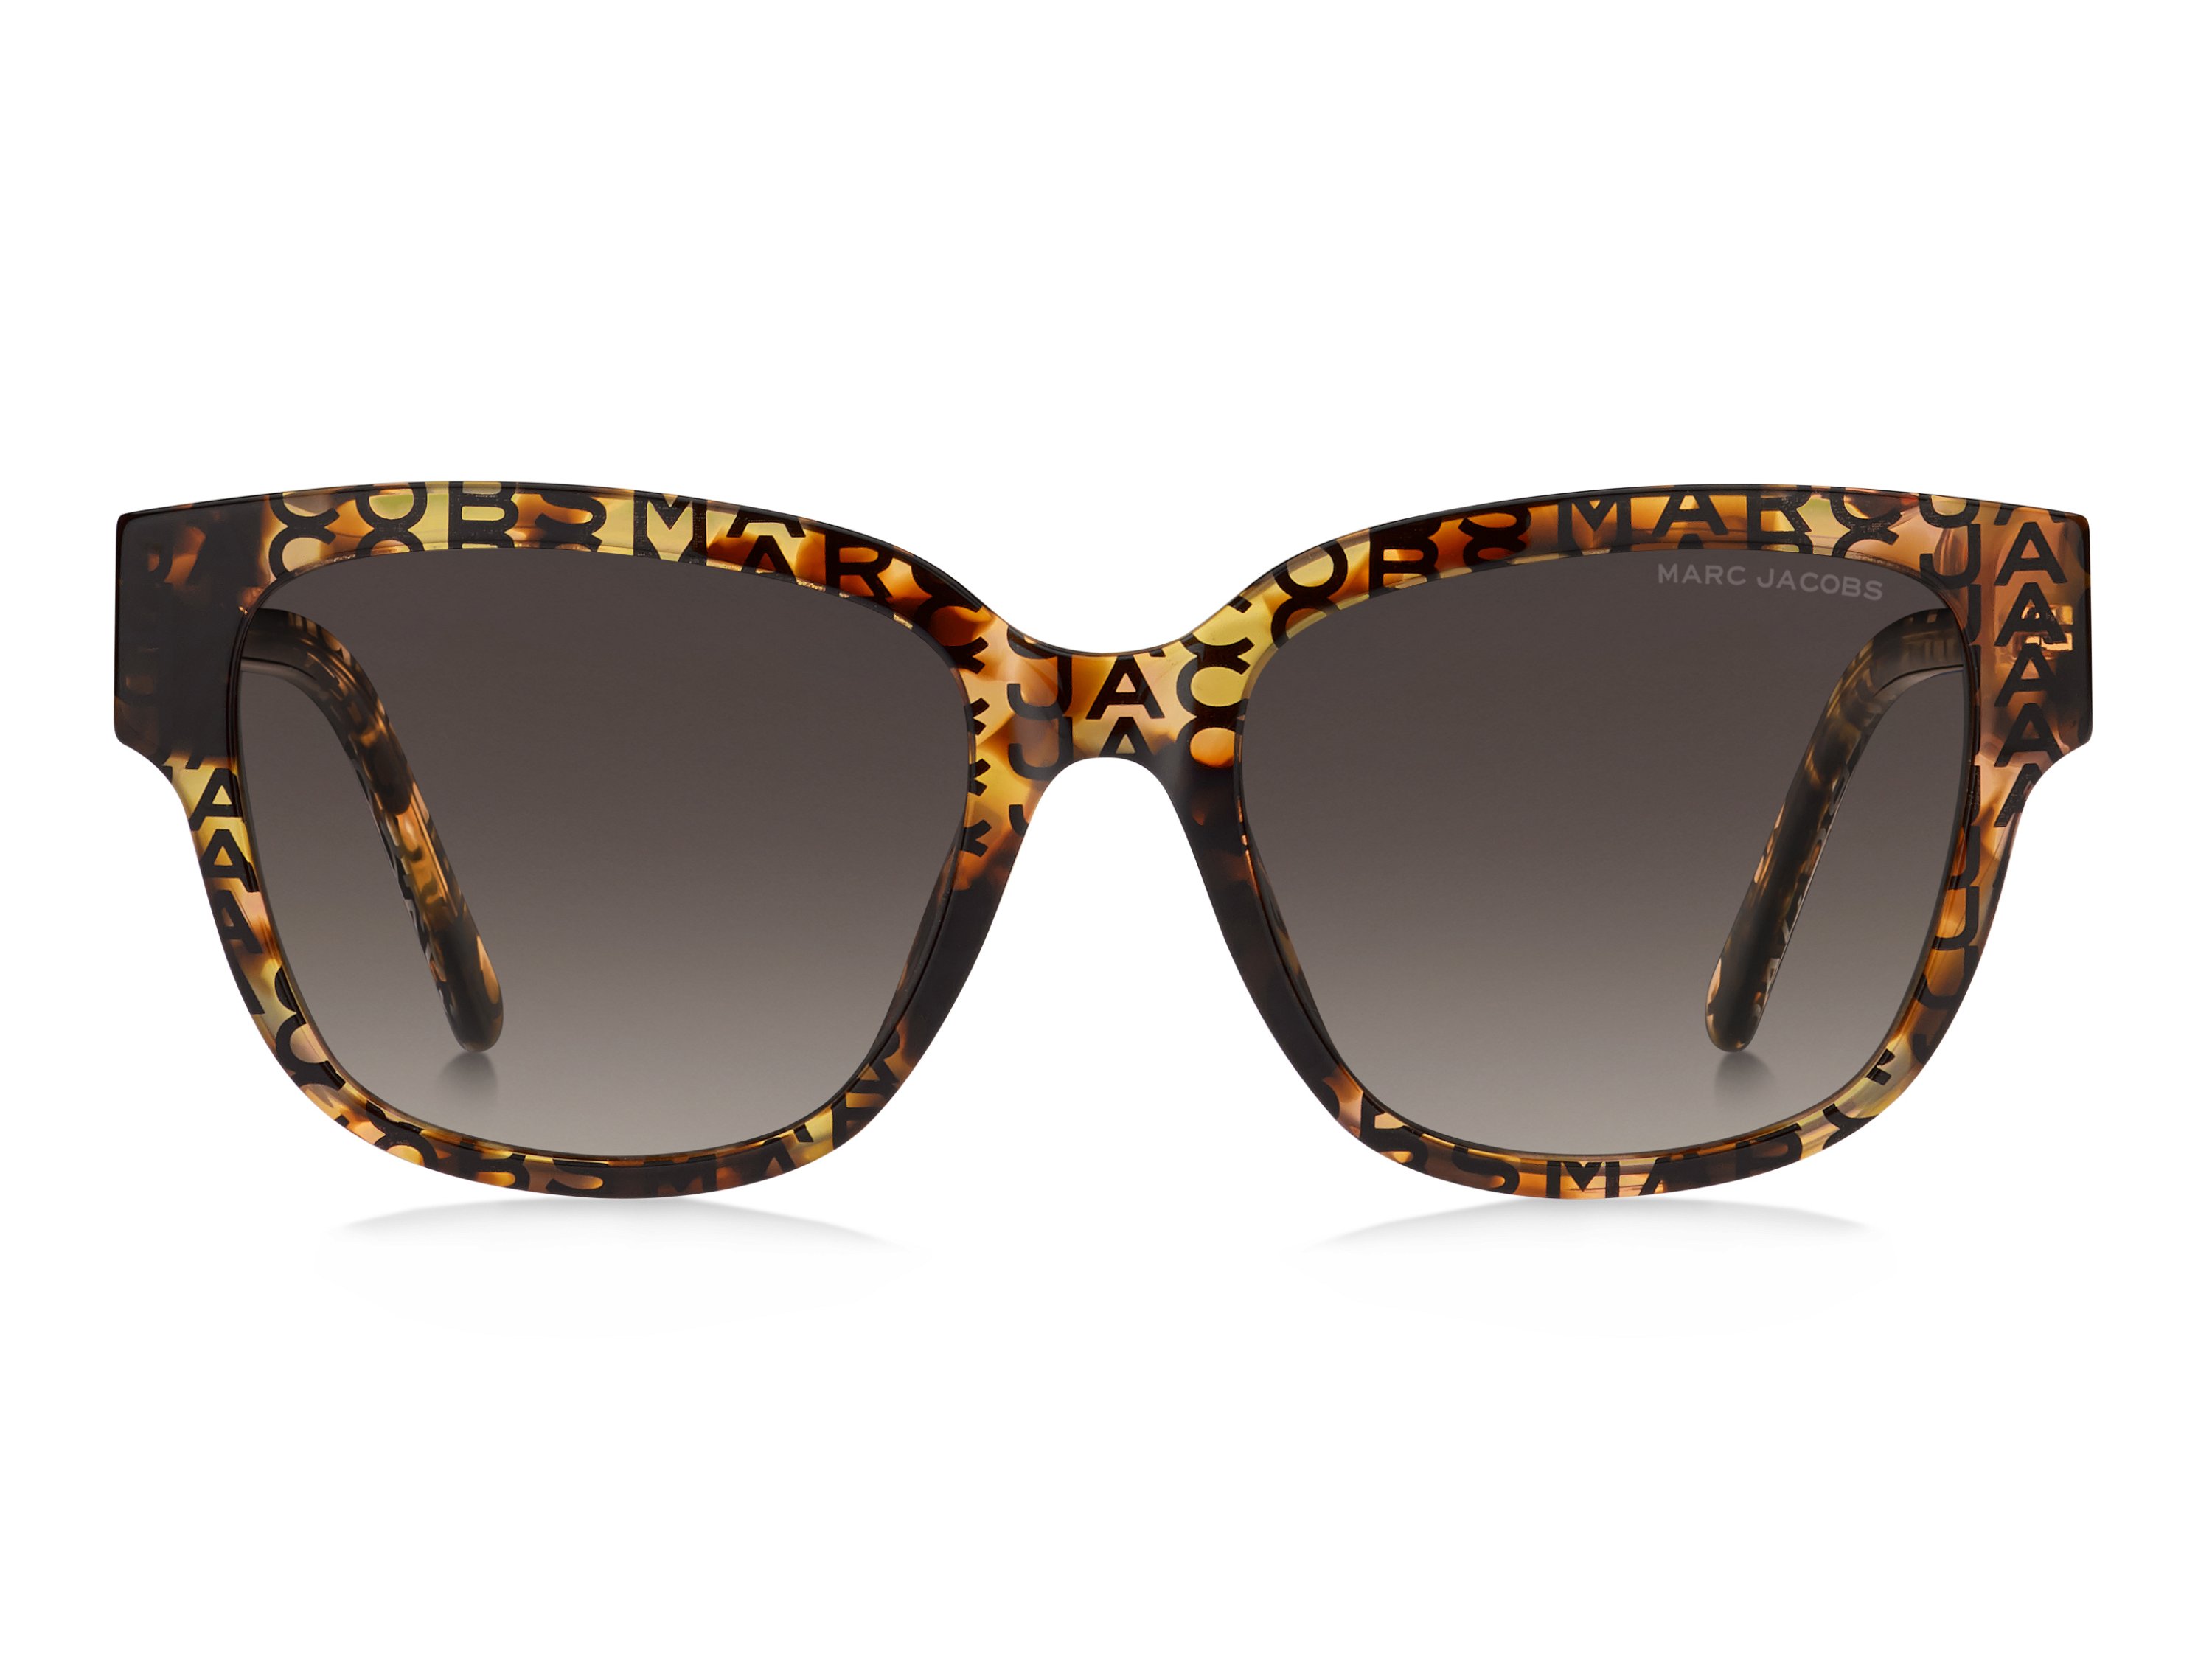 Das Bild zeigt die Sonnenbrille marc_734 S HTP von Marc Jacobs in pattern havana.